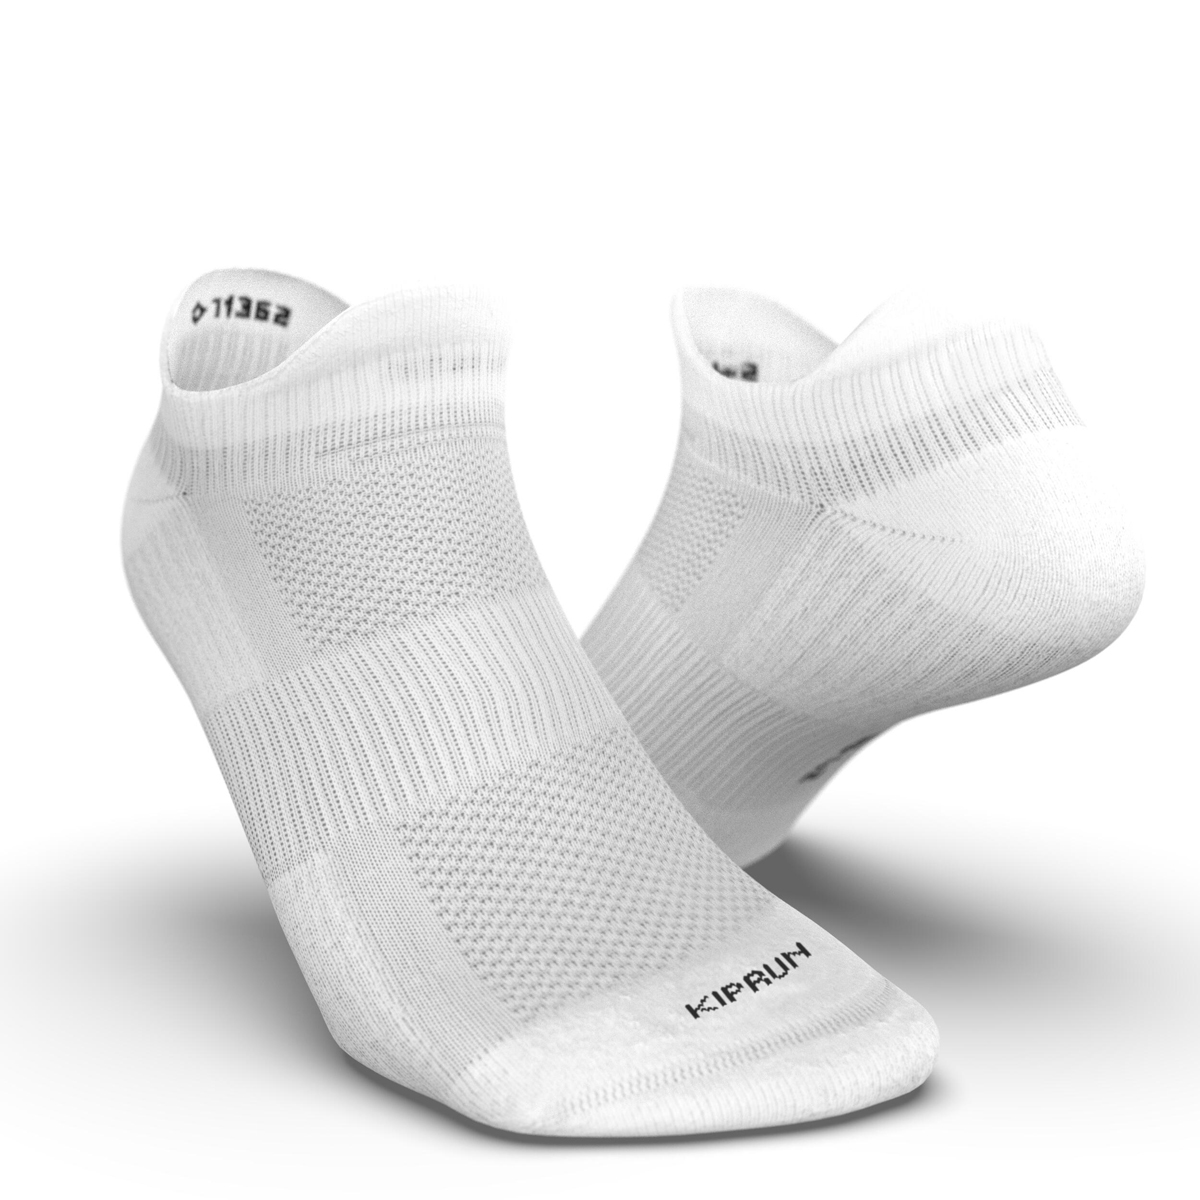 Kiprun Eco-Design Run500 x 2 Invisible Running Socks